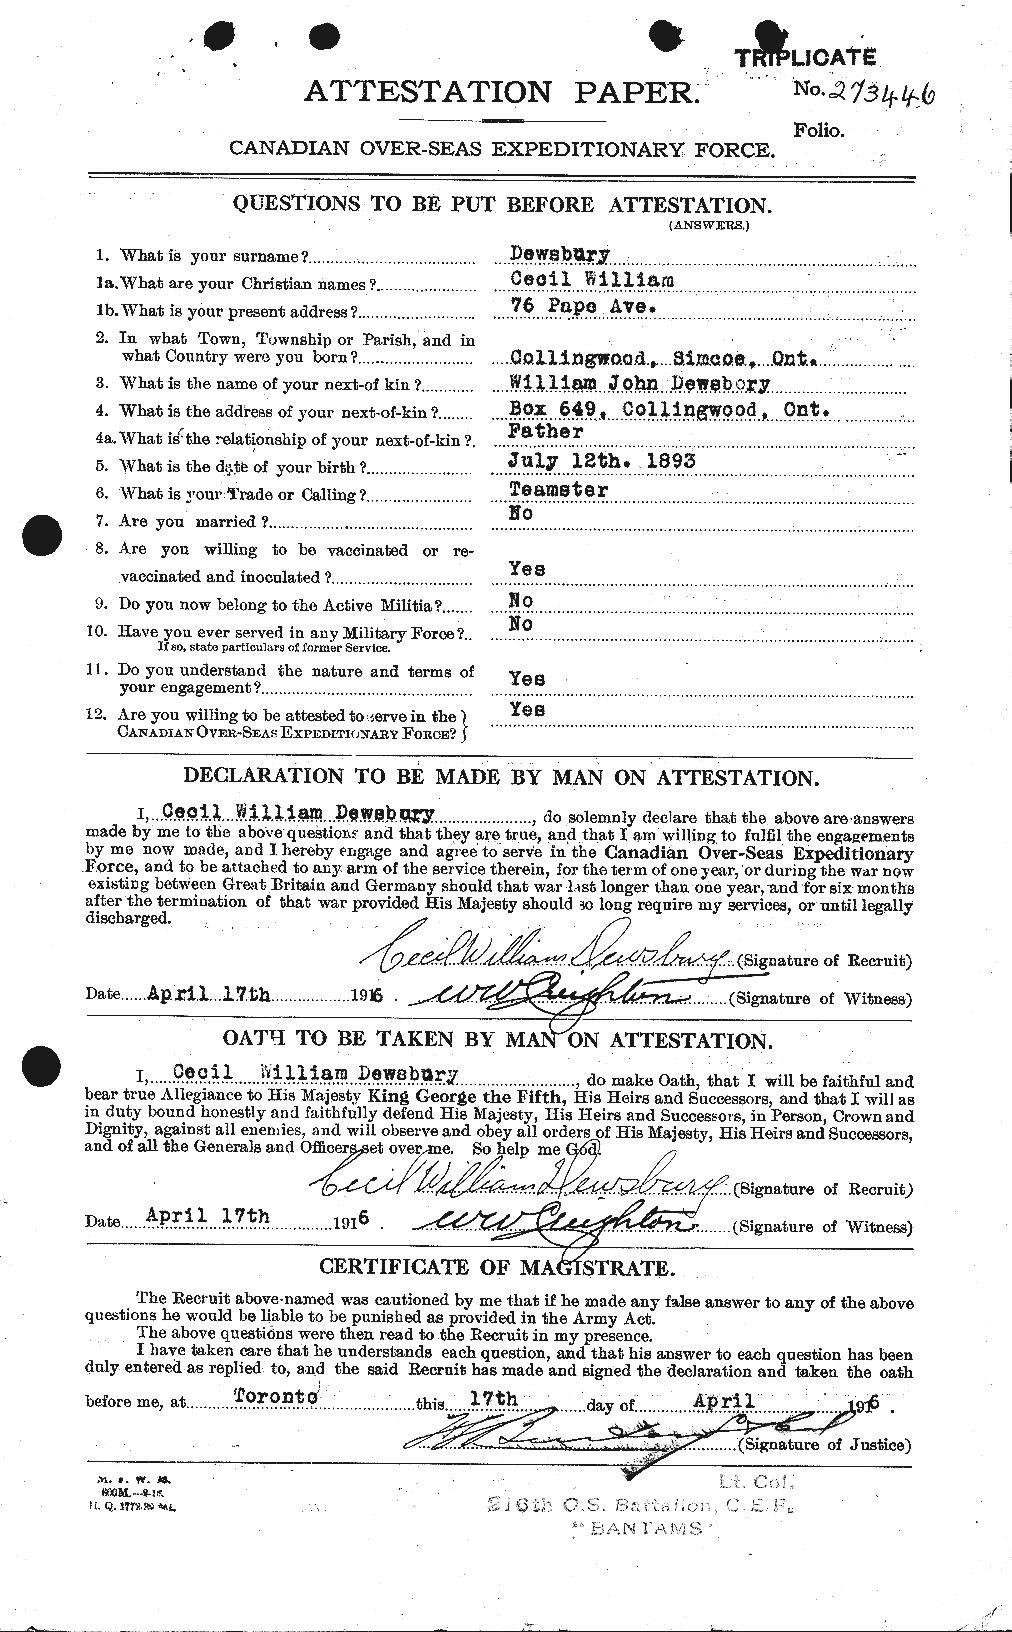 Dossiers du Personnel de la Première Guerre mondiale - CEC 293126a